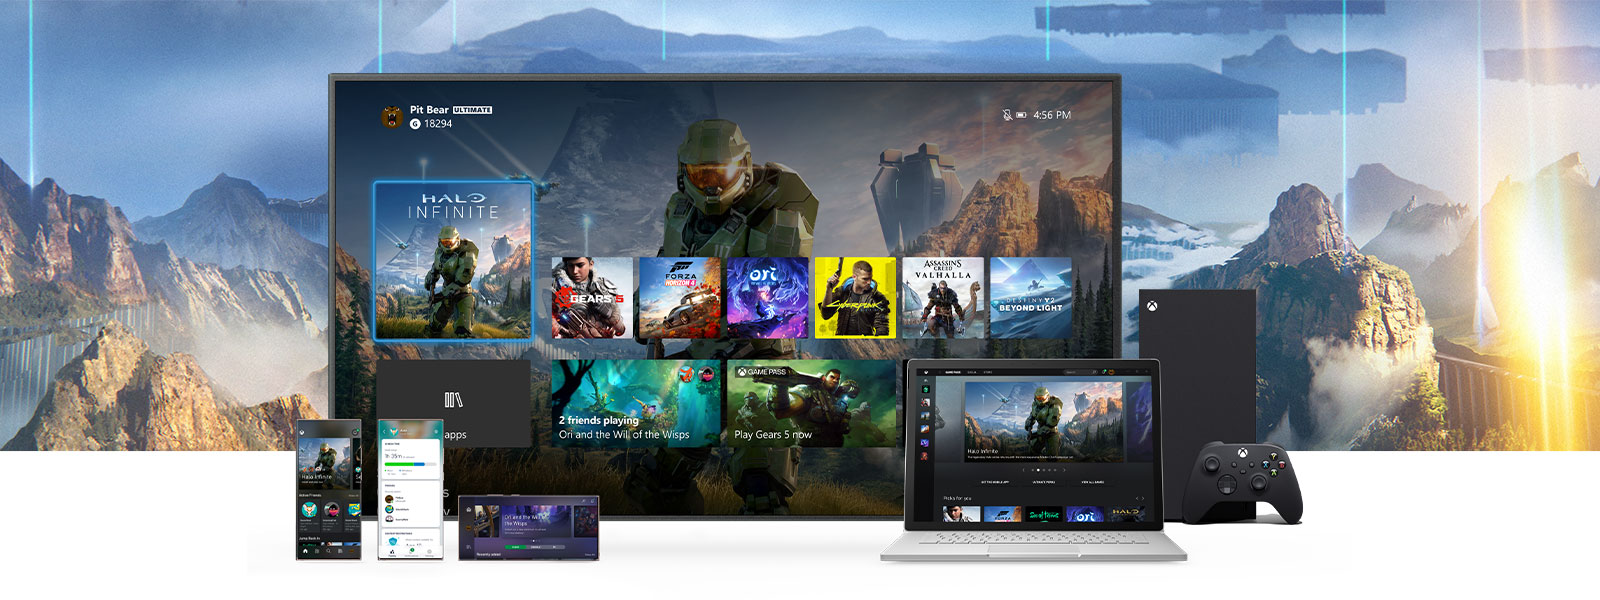 Az Xbox Irányítópult látható egy tévén egy Xbox Series X konzol mellett. További eszközök (pl. egy PC és mobileszközök) helyezkednek el a tévé előtt.